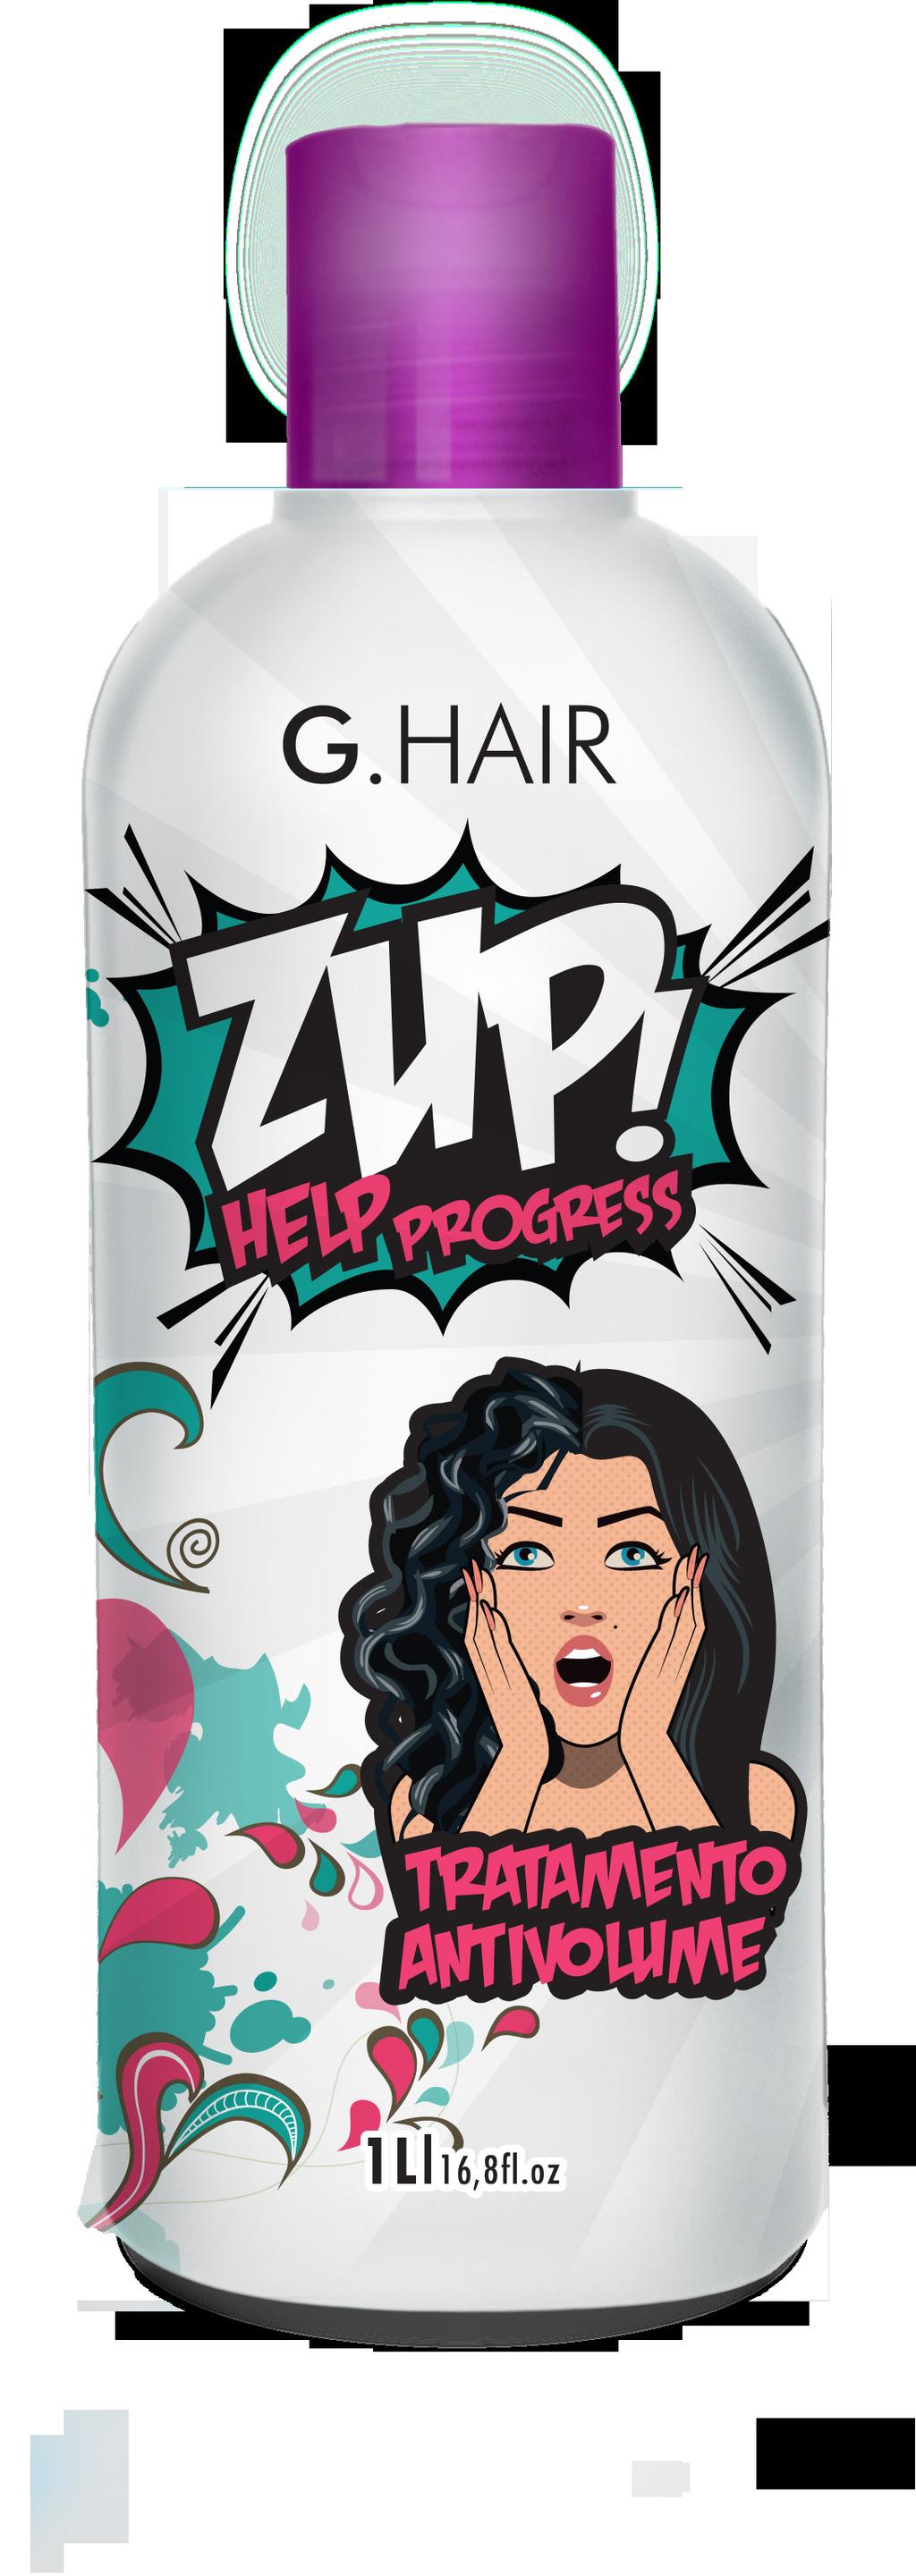 Zup Help Progress Shampoo de Limpeza Profunda G.Hair Zup Help Progress step 1 O Shampoo de Limpeza Profunda G.